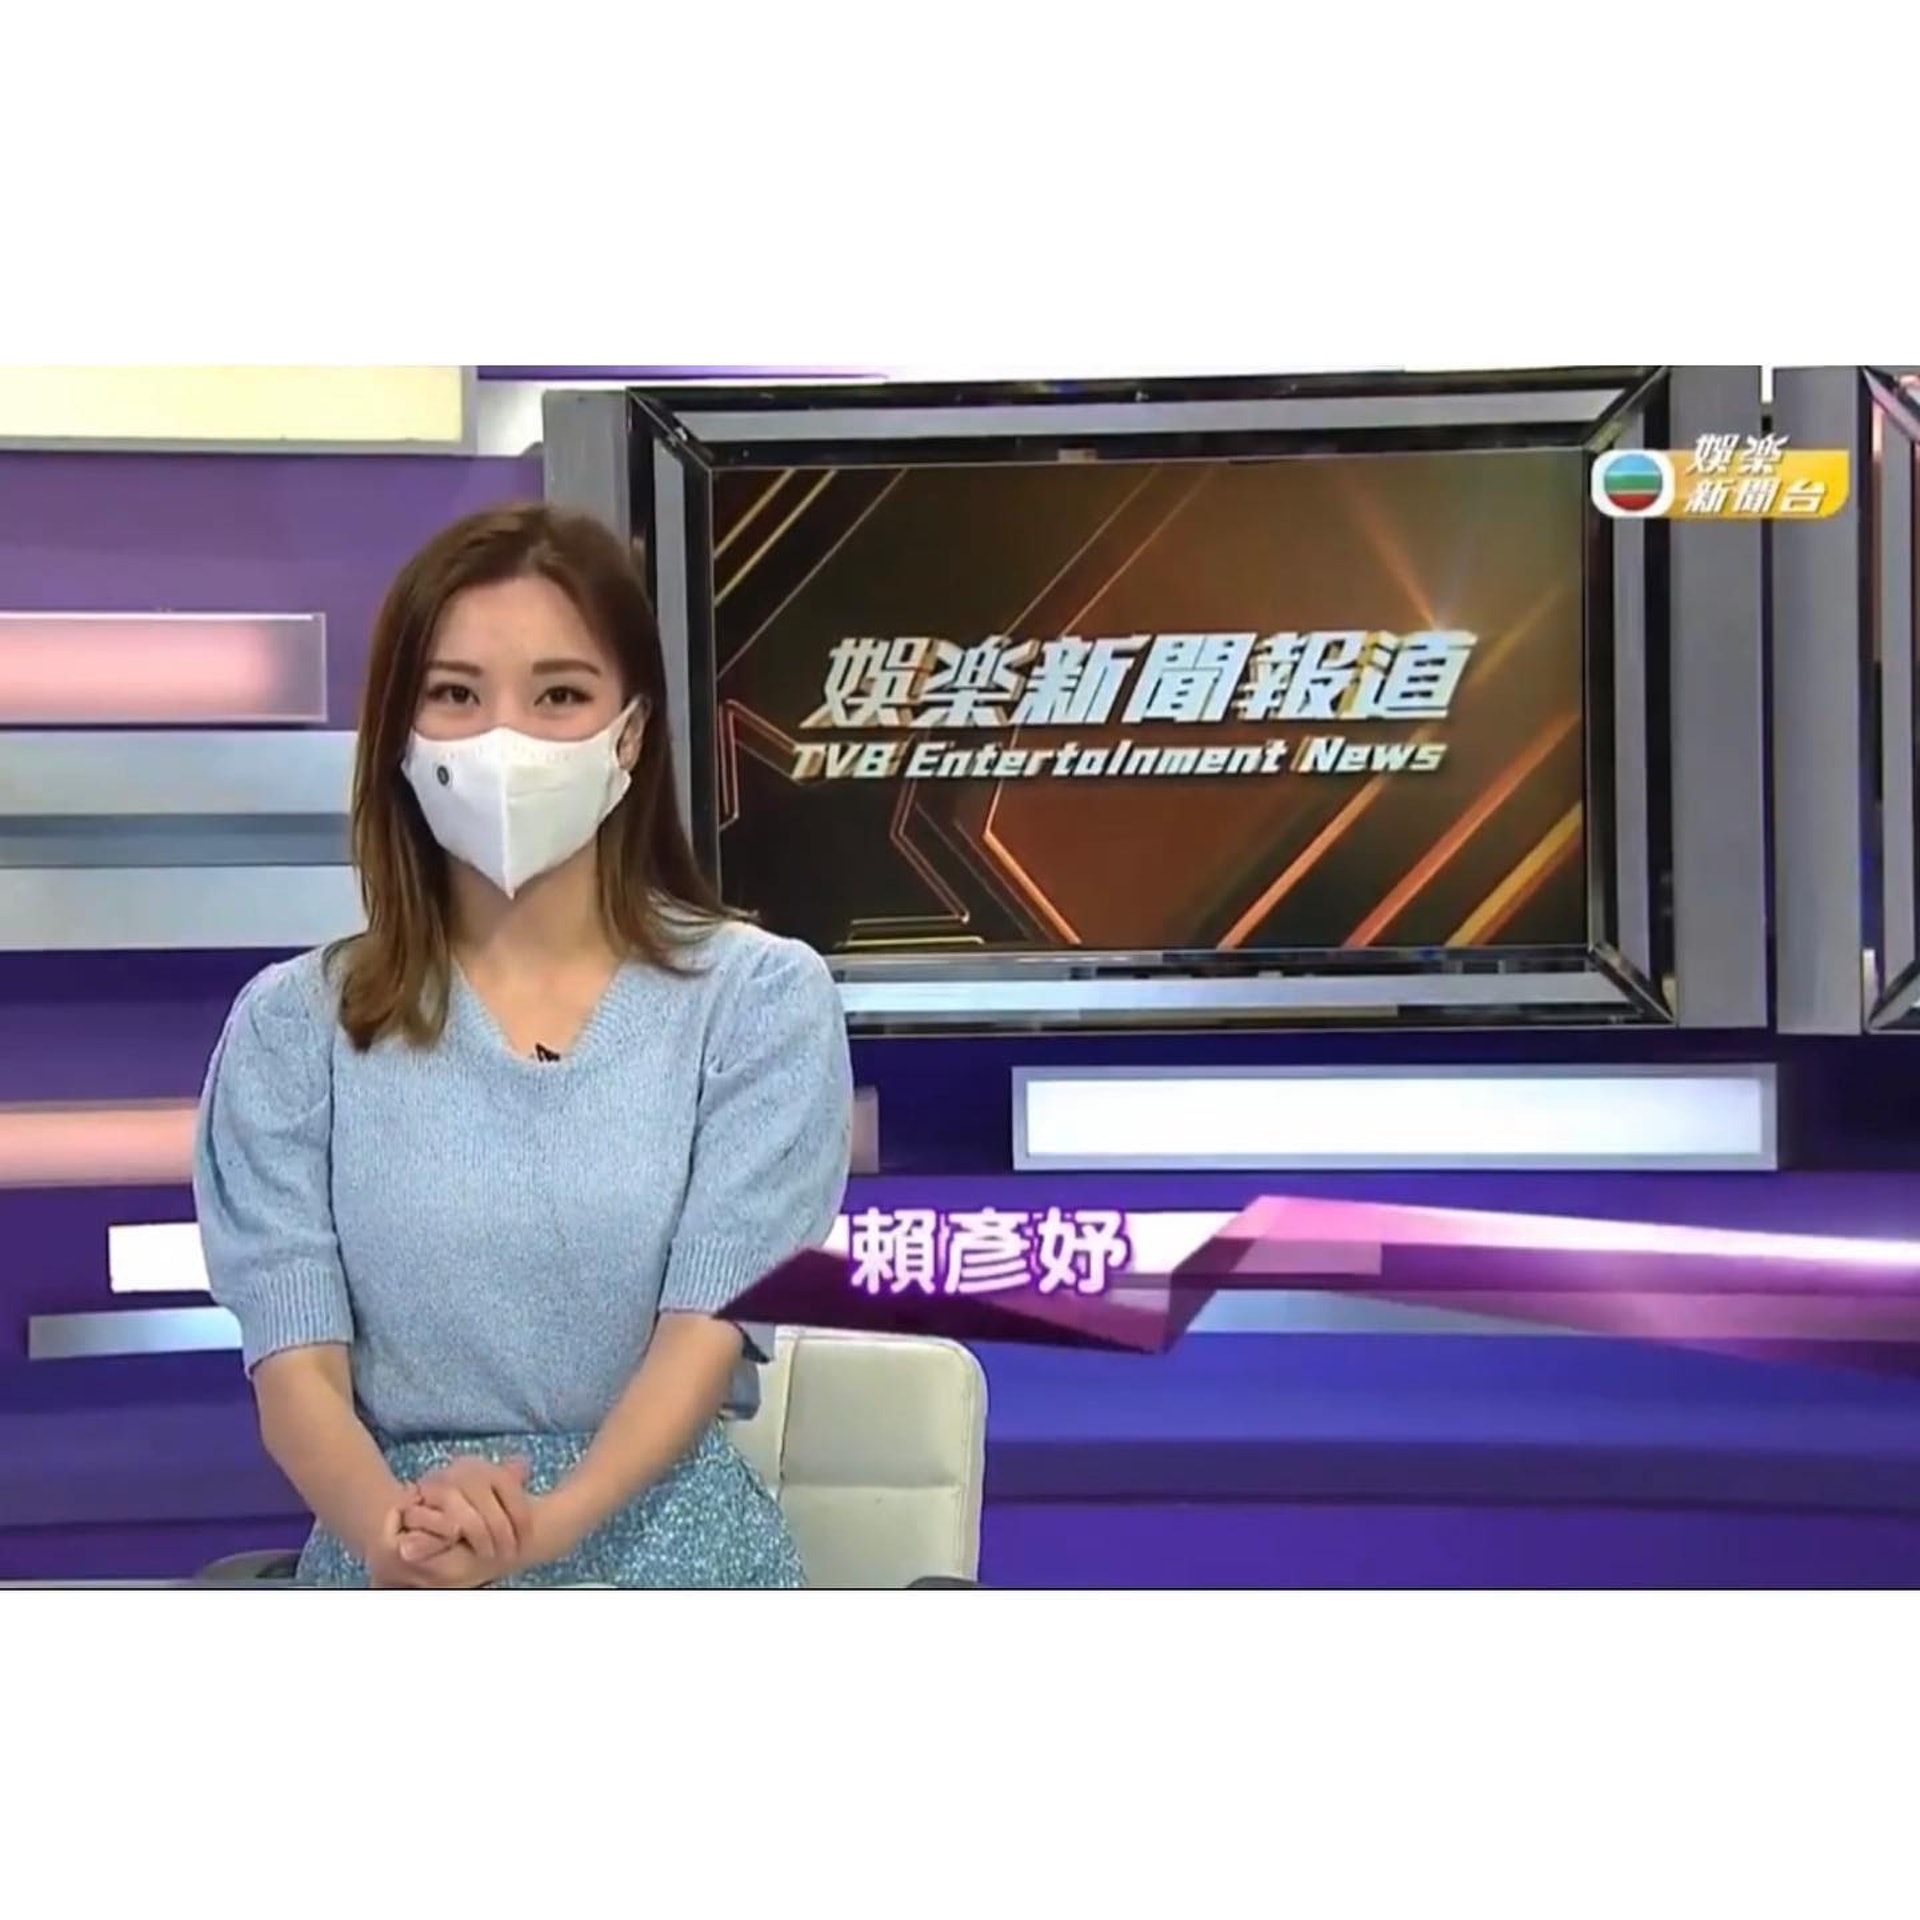 问姜丽文怎与亡母庆祝母亲节  TVB主播无脑提问遭网骂翻